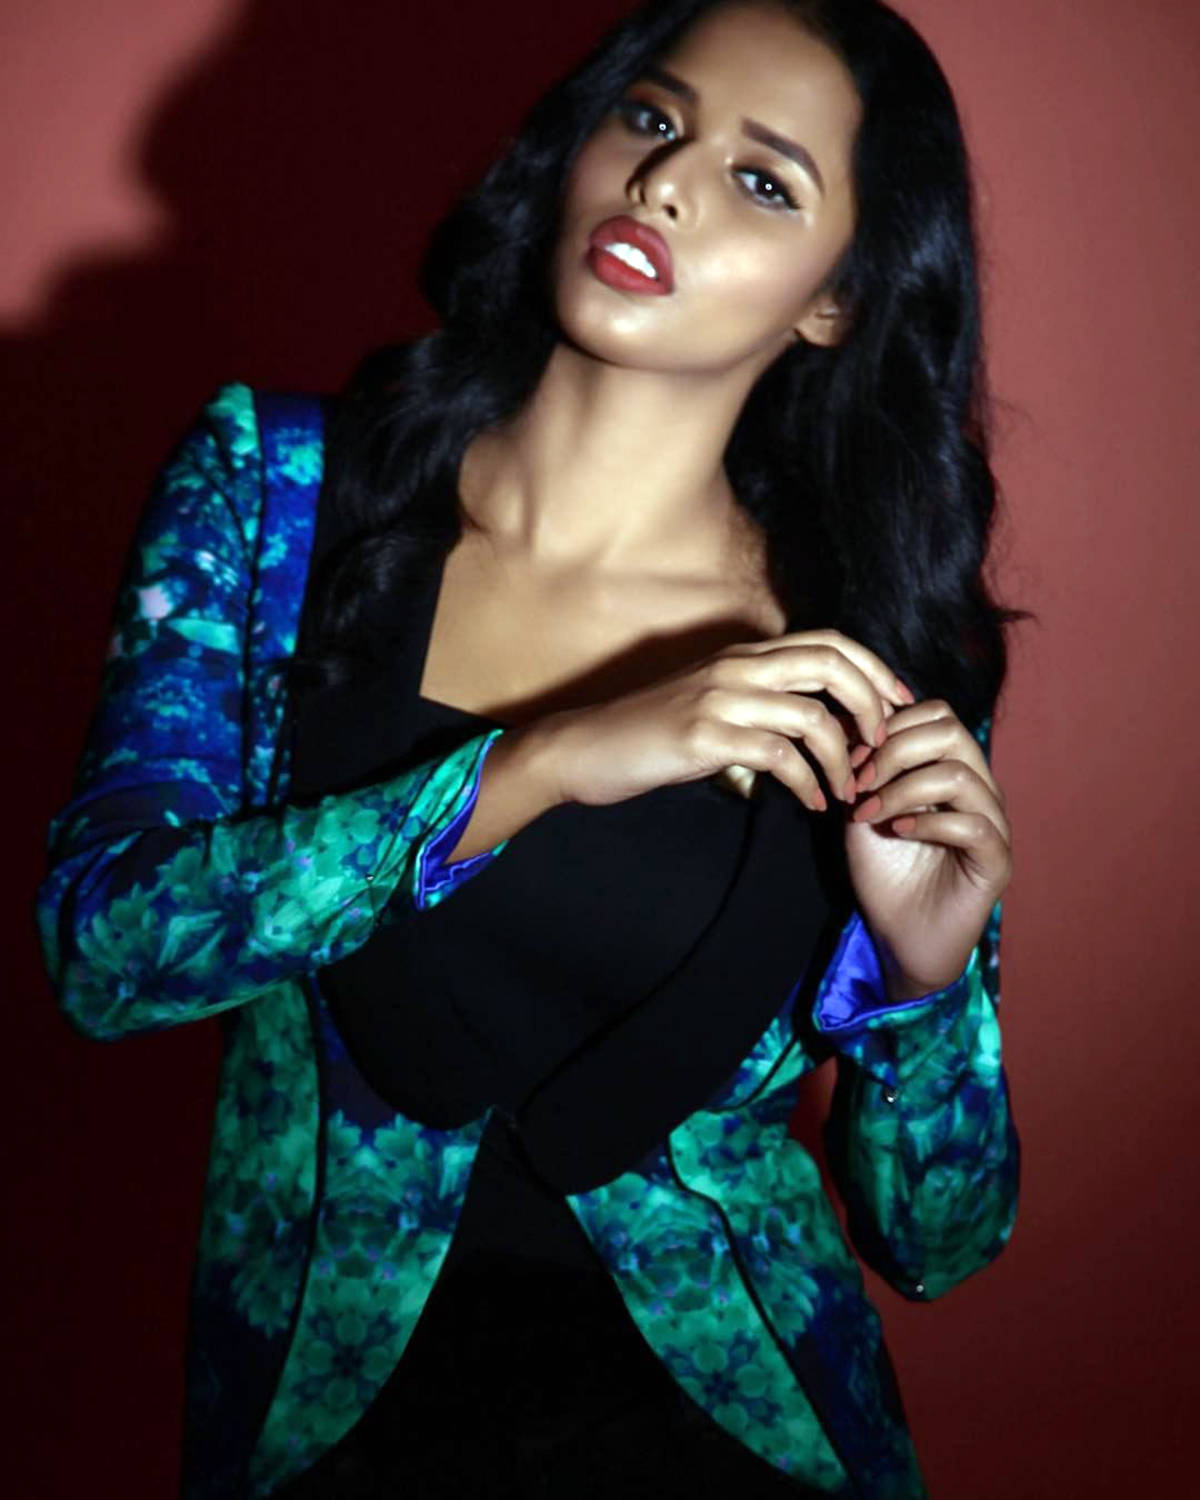 Varshita Thatavarthi is winning hearts with her captivating photoshoots